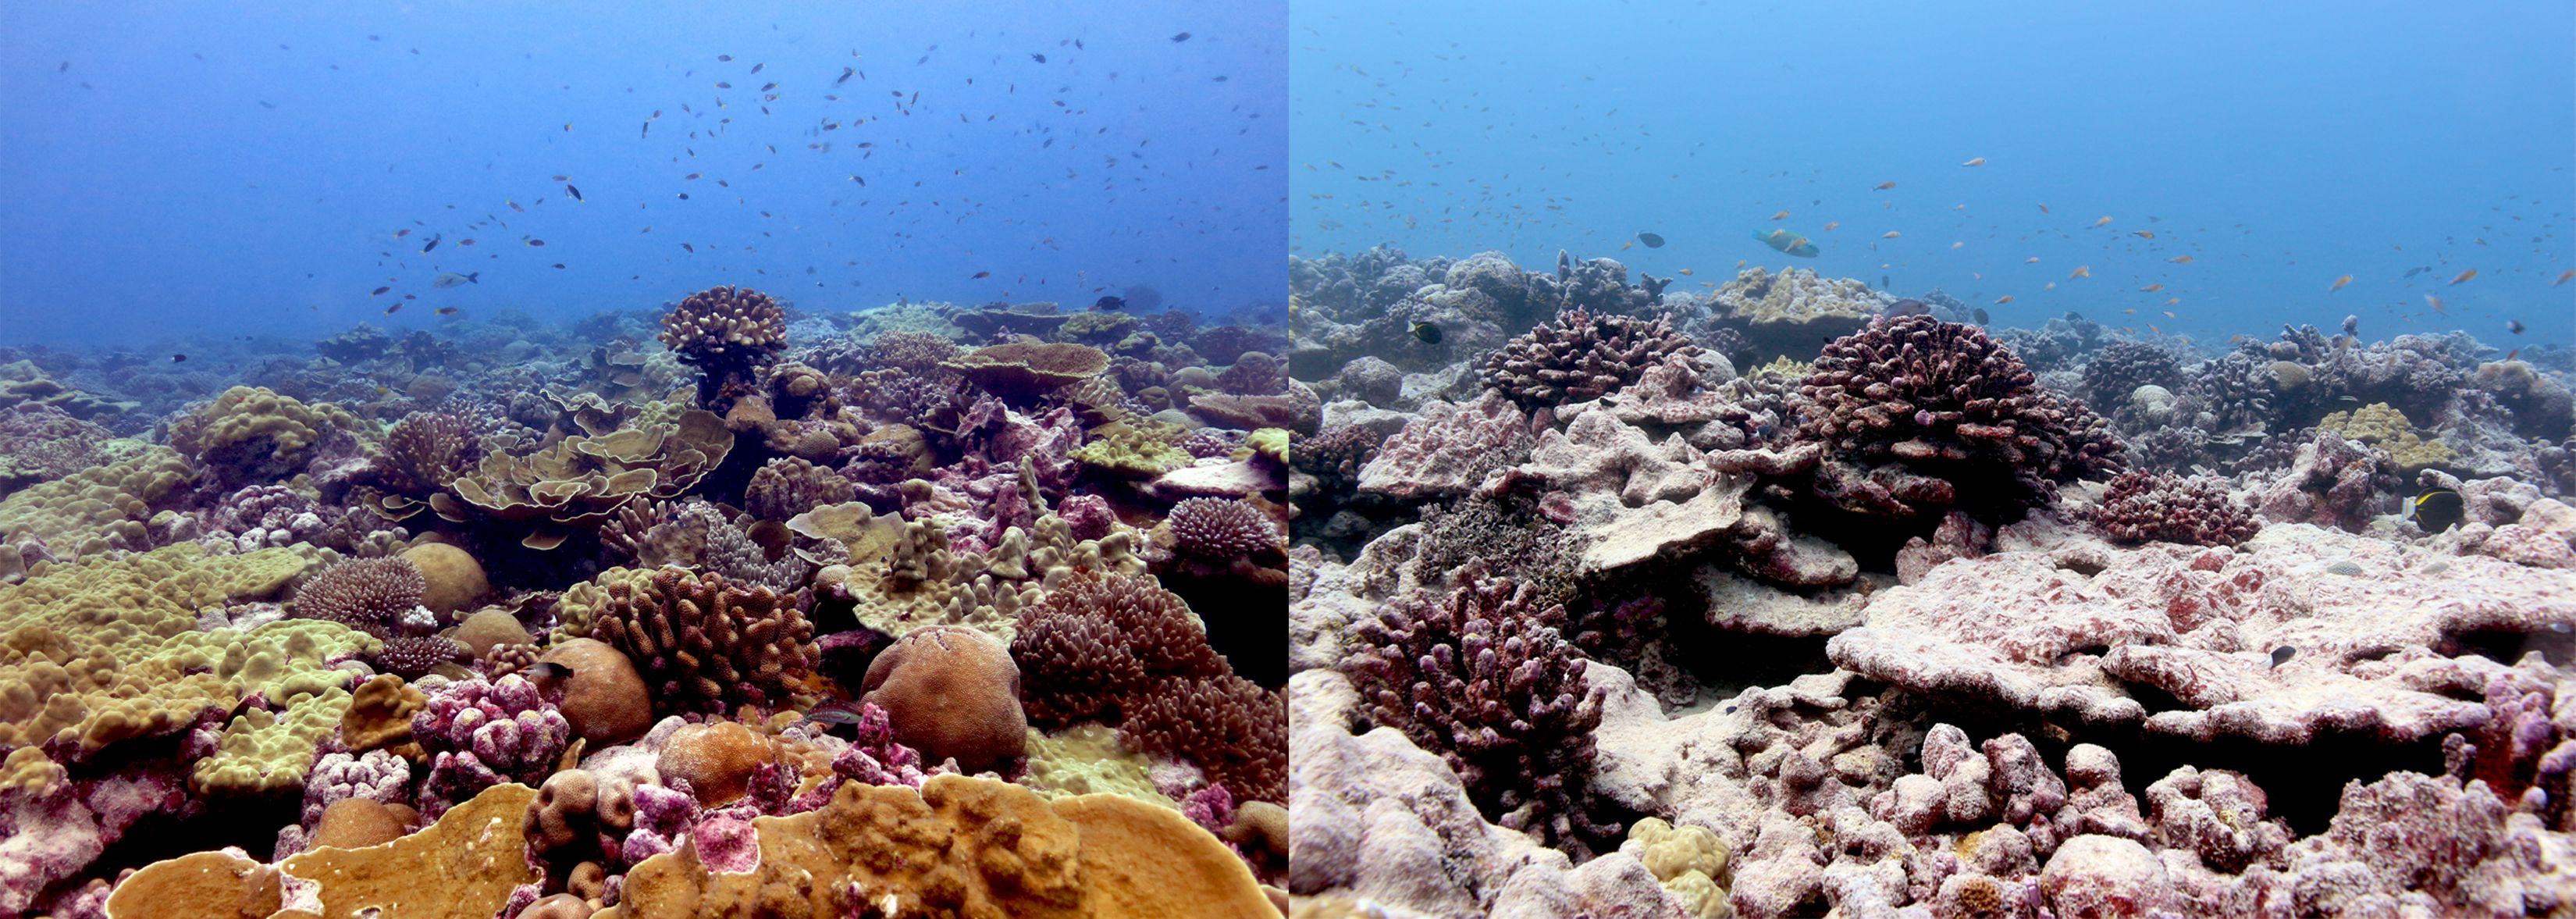 Korallzátonyok kifehéredése Kiritimatinál (2015-ös és 2018-as fotók)